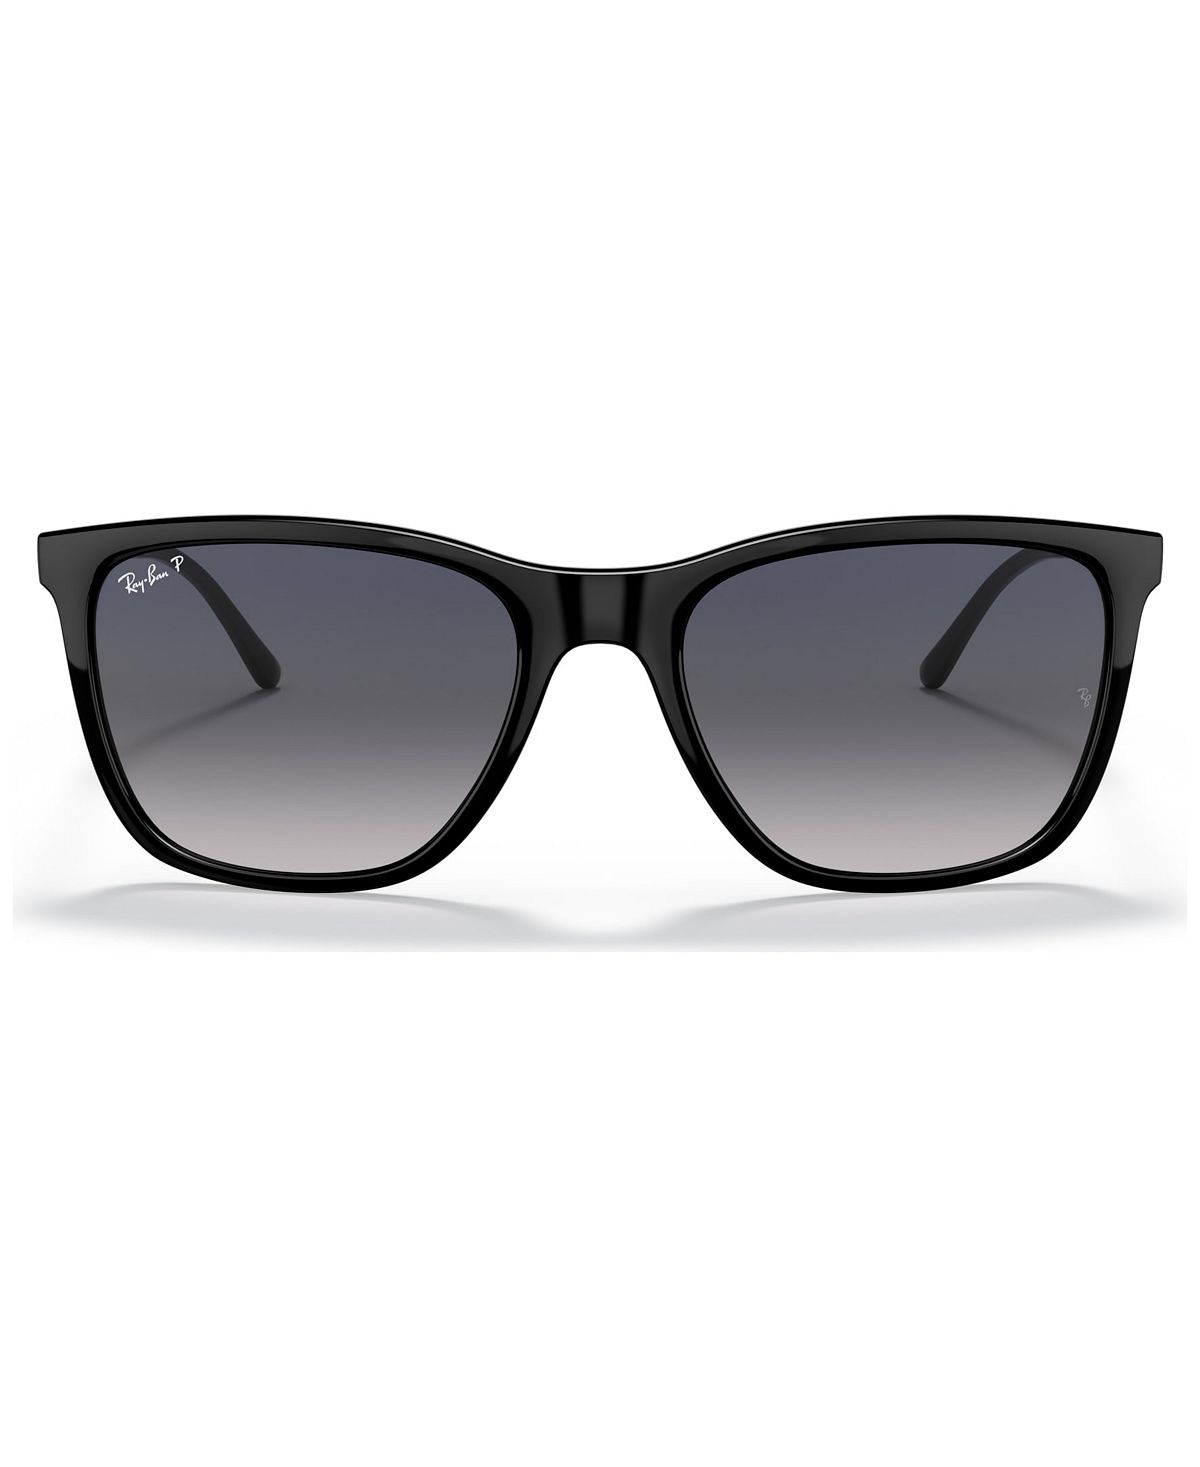 Поляризованные солнцезащитные очки унисекс, RB4344 56 Ray-Ban